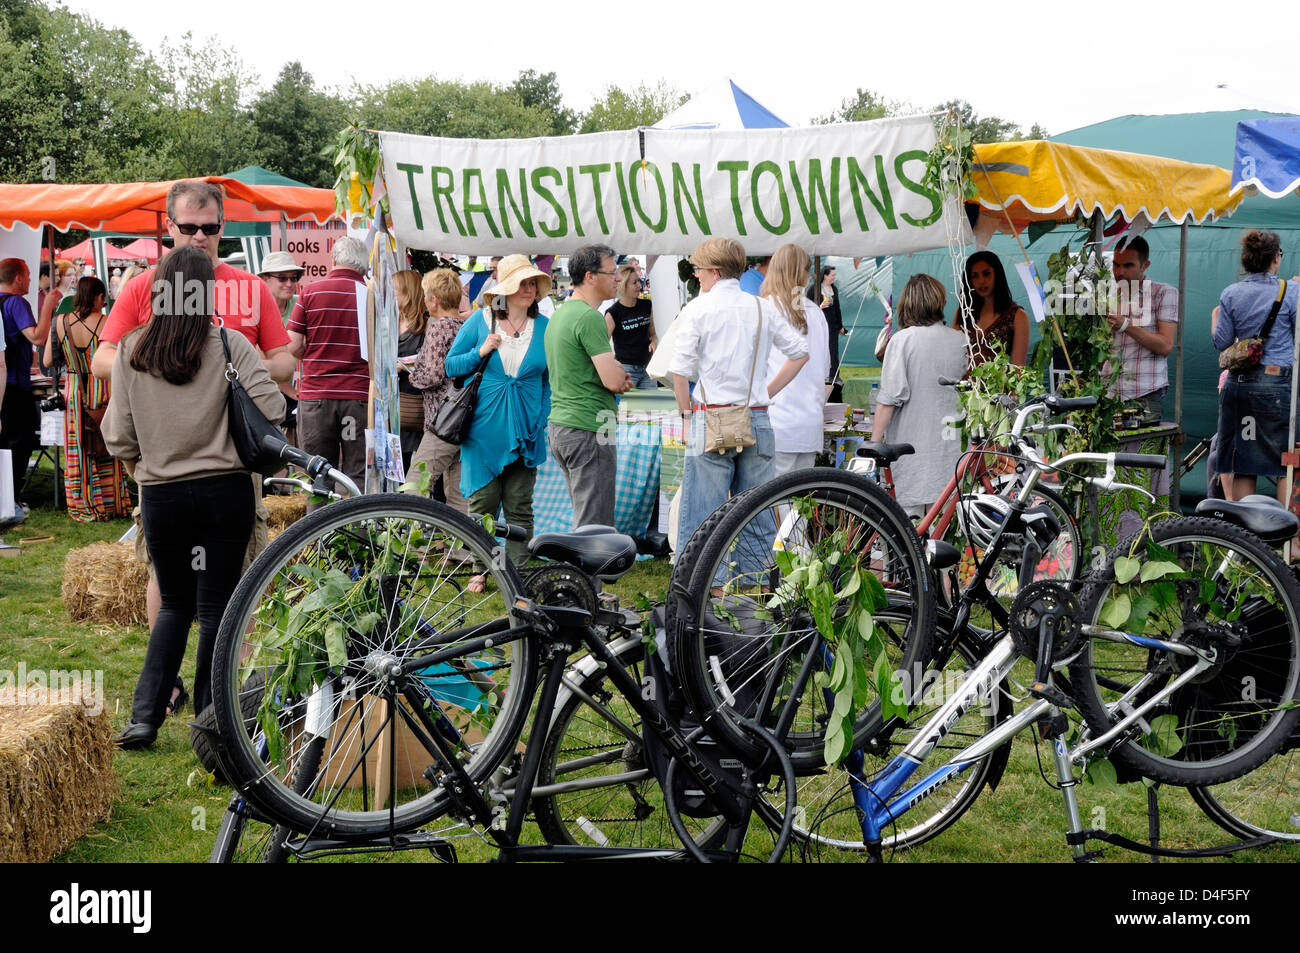 Transition Towns ou la ville stalle entouré par des personnes avec des vélos à l'envers en face, Camden maintenant London Green Fair Angleterre Royaume-Uni Banque D'Images